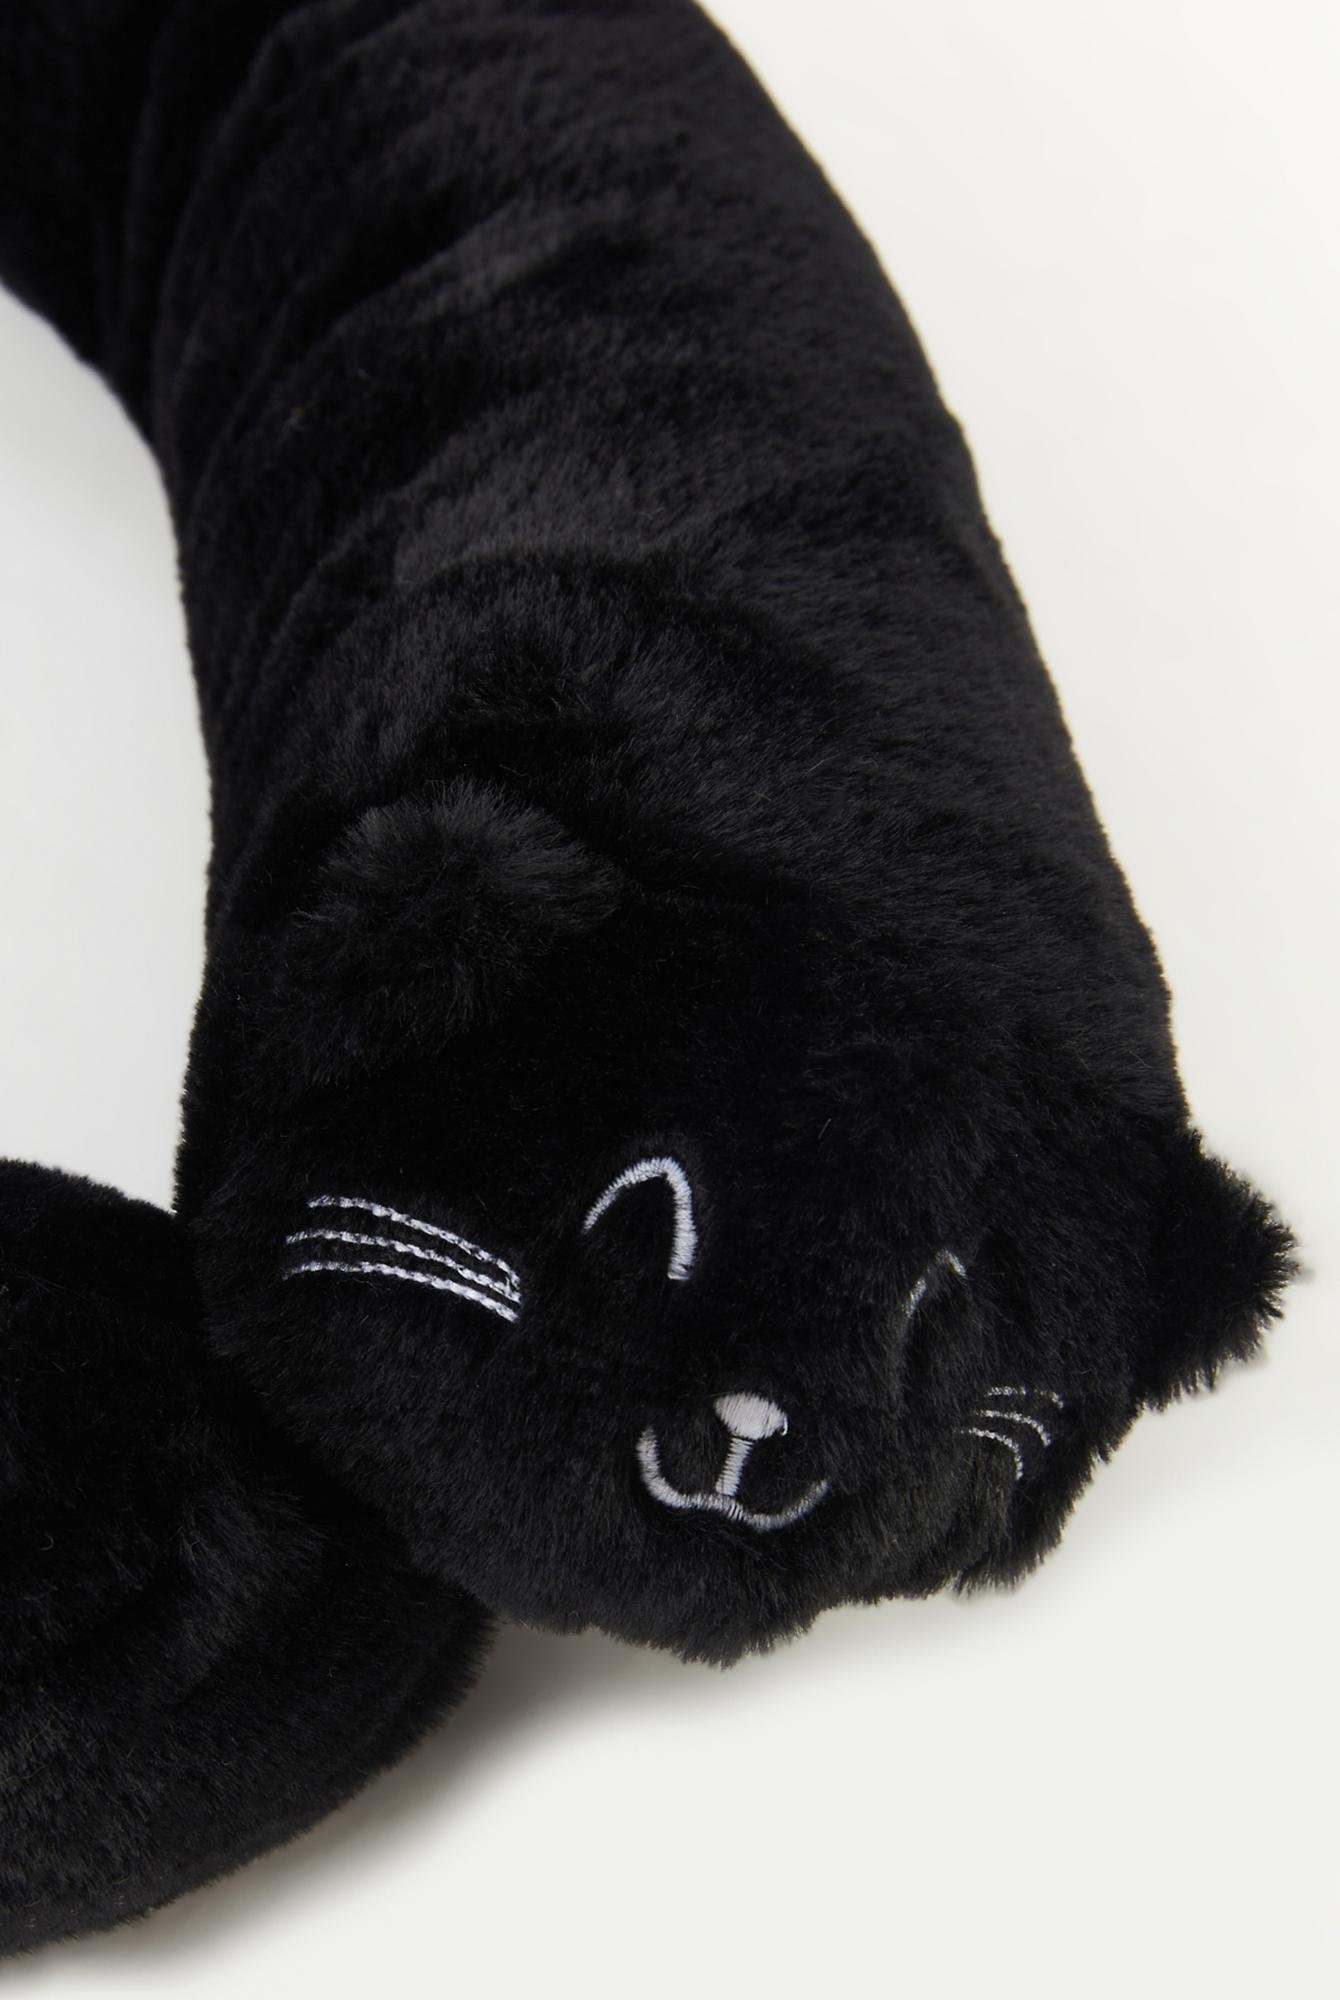  Ecrou Makarna Kedi Yastık 150 cm Siyah